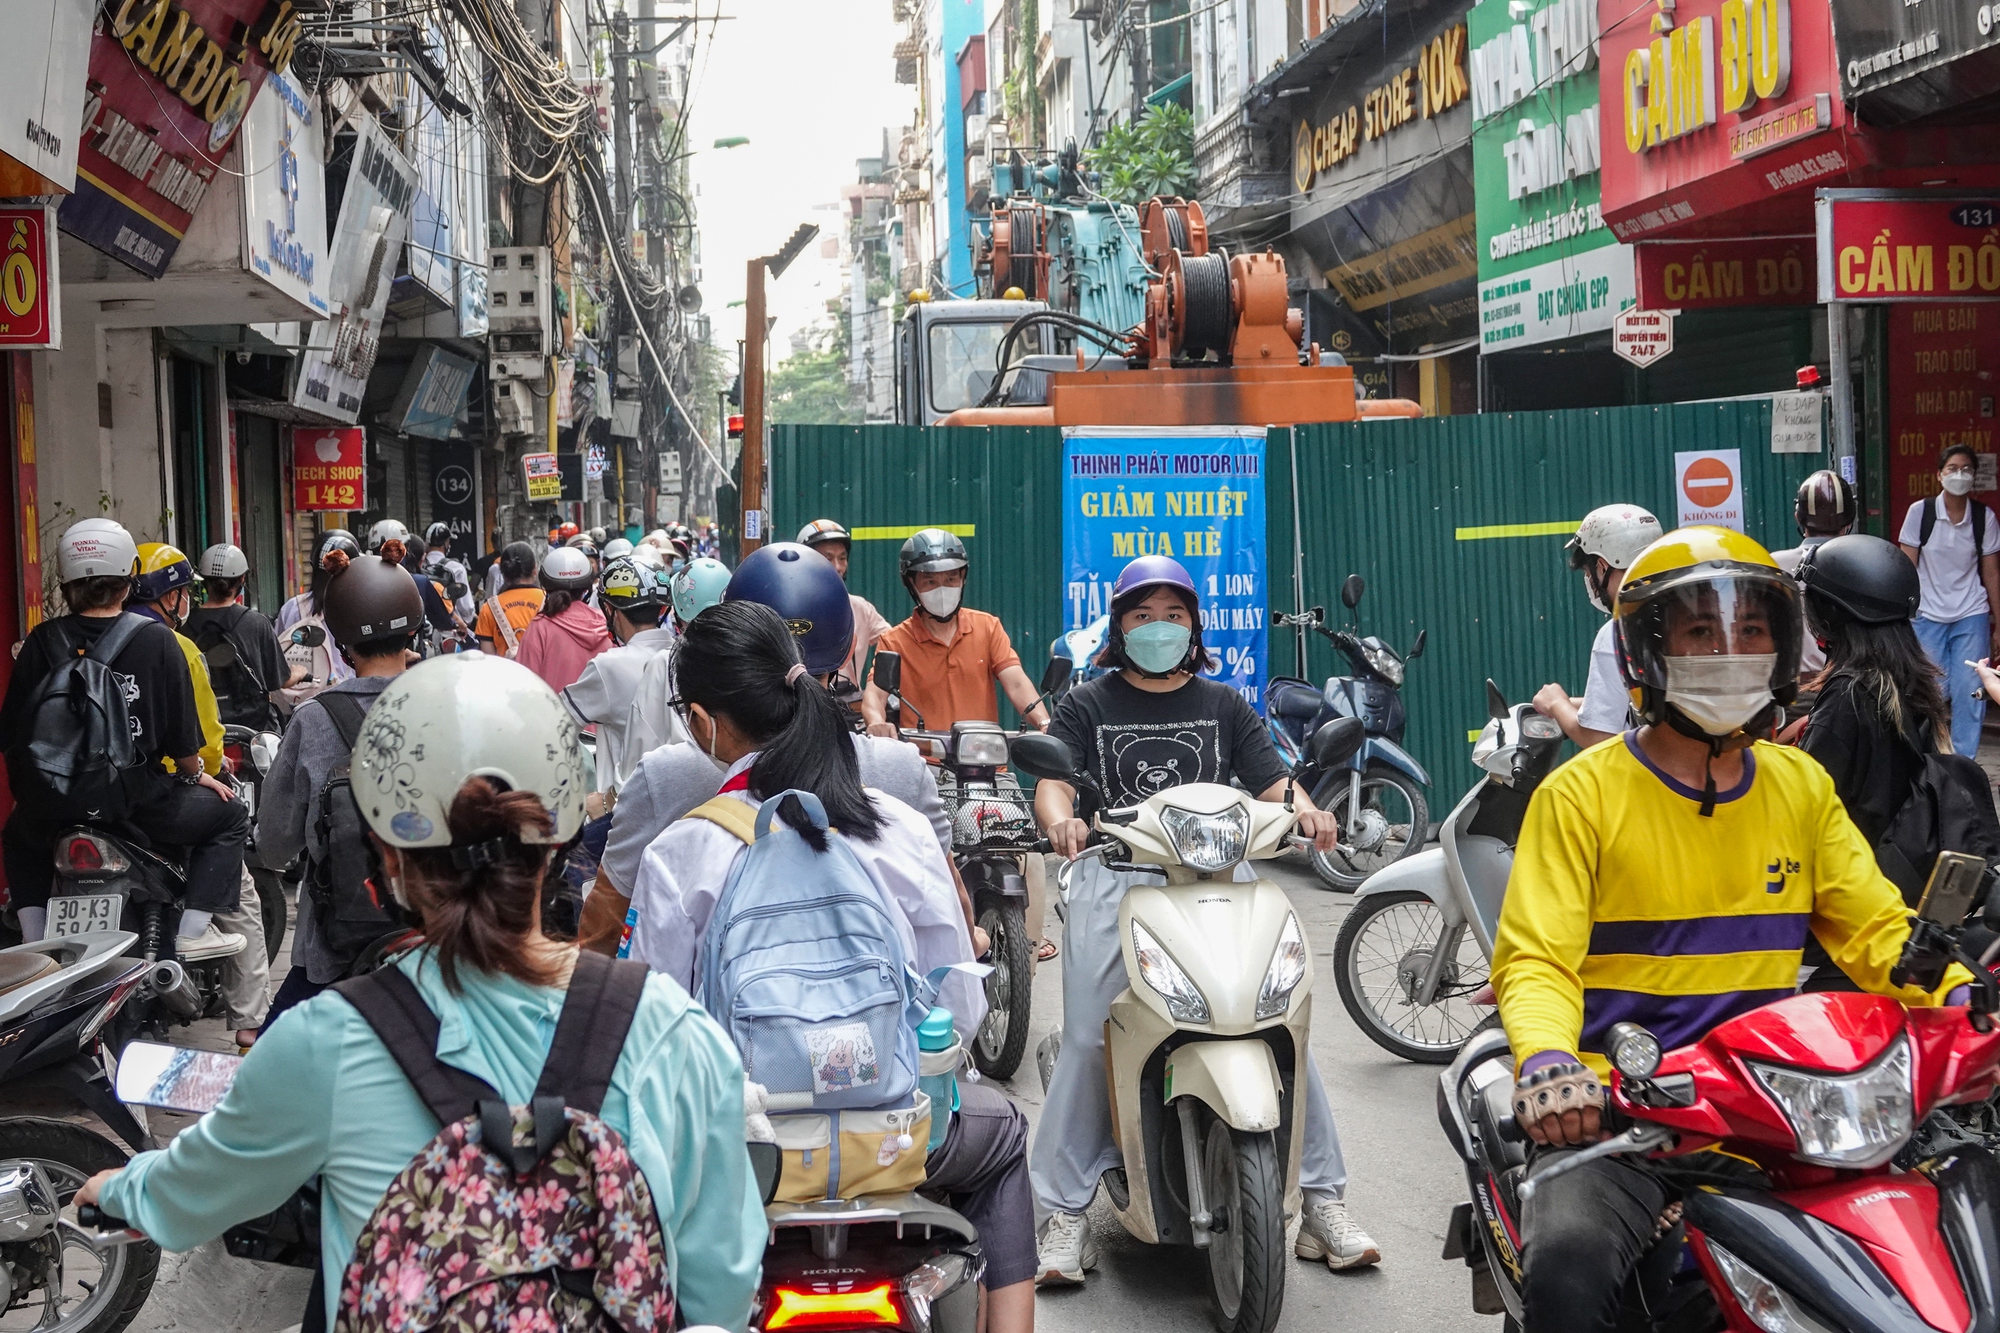 Hà Nội: "Lô cốt" án ngữ giữa đường khiến người dân khổ sở di chuyển-2